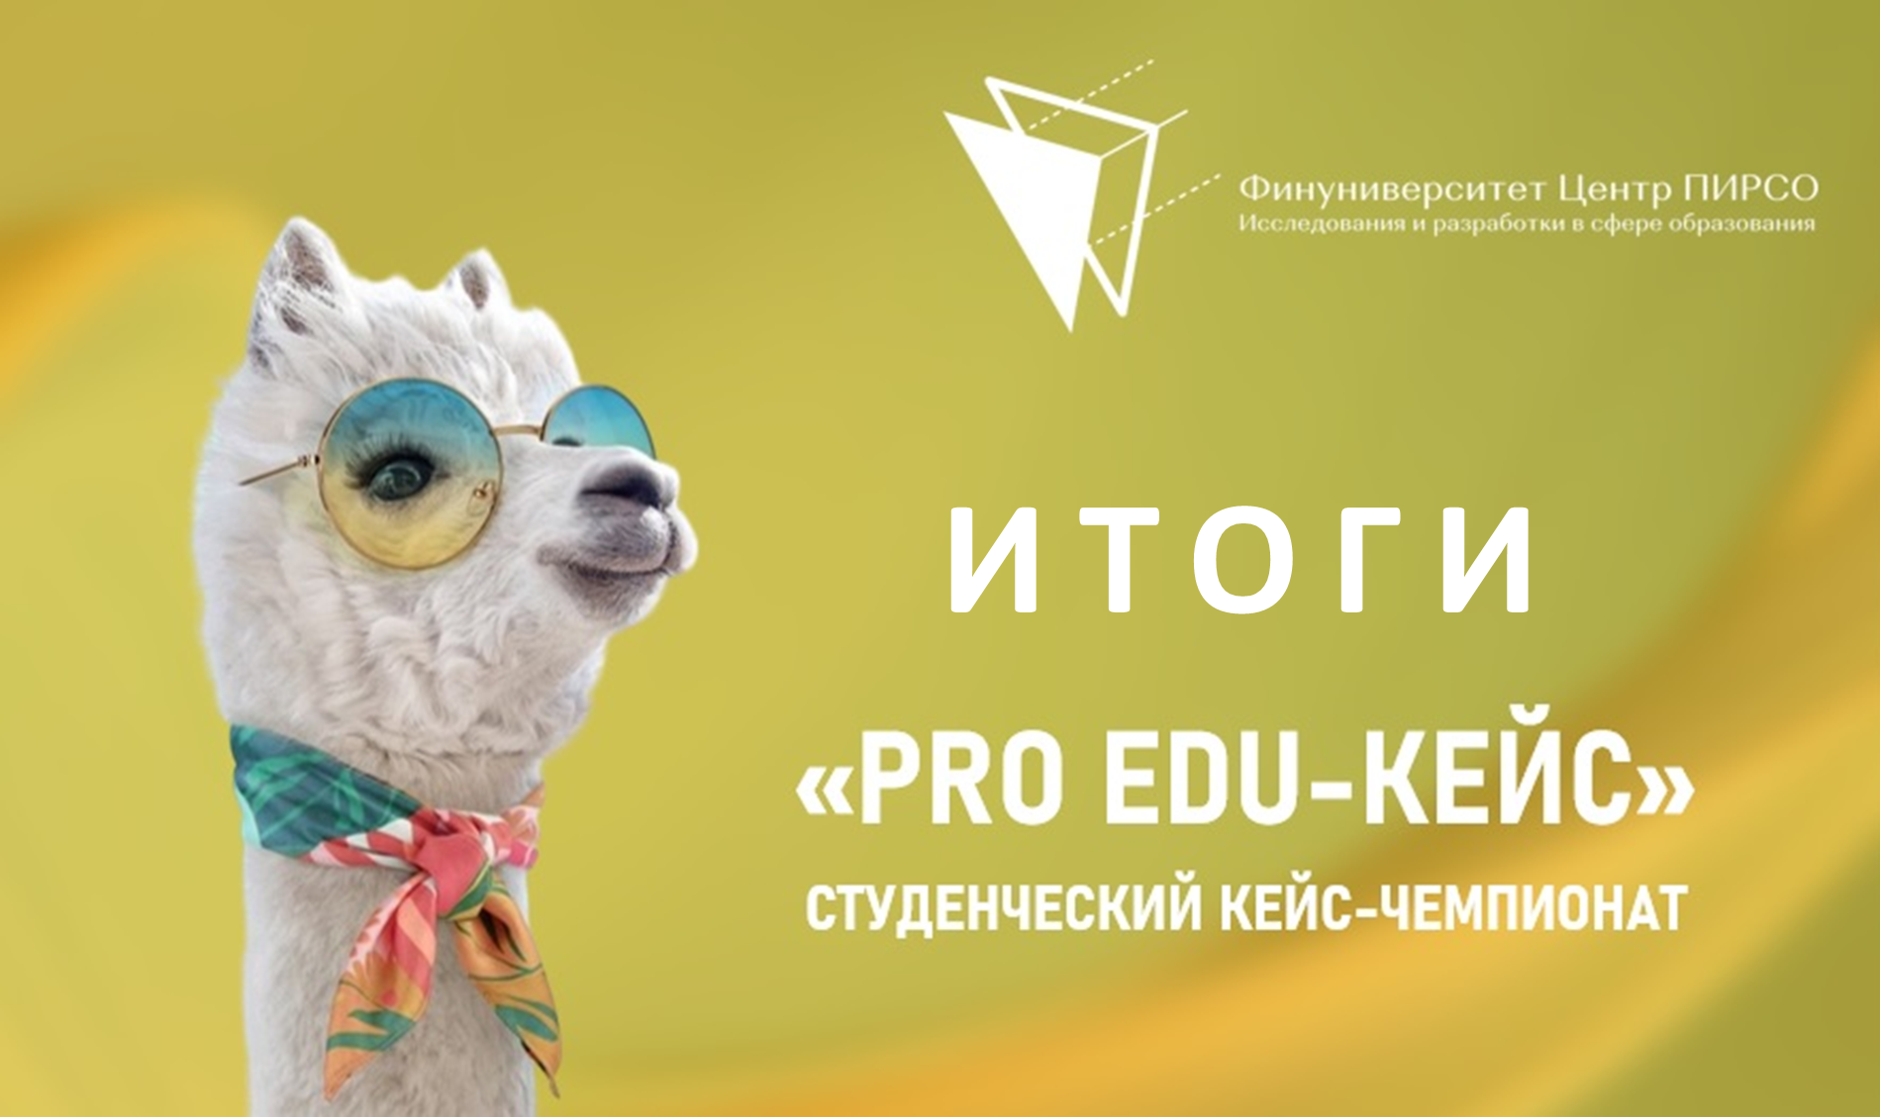 ИТОГИ III Студенческого кейс-чемпионата "Pro Edu-кейс"